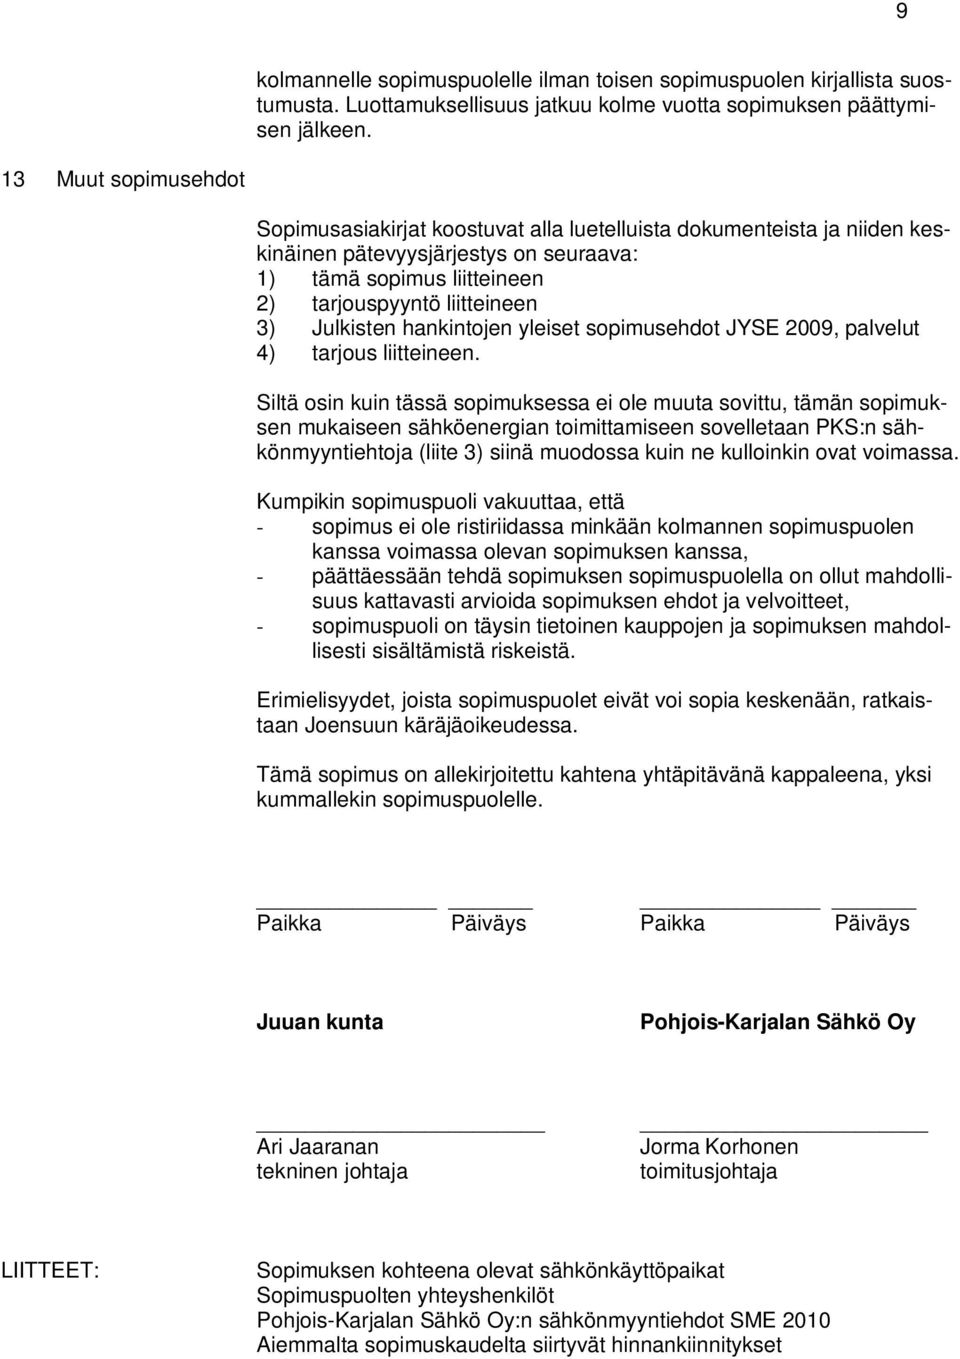 Julkisten hankintojen yleiset sopimusehdot JYSE 2009, palvelut 4) tarjous liitteineen.